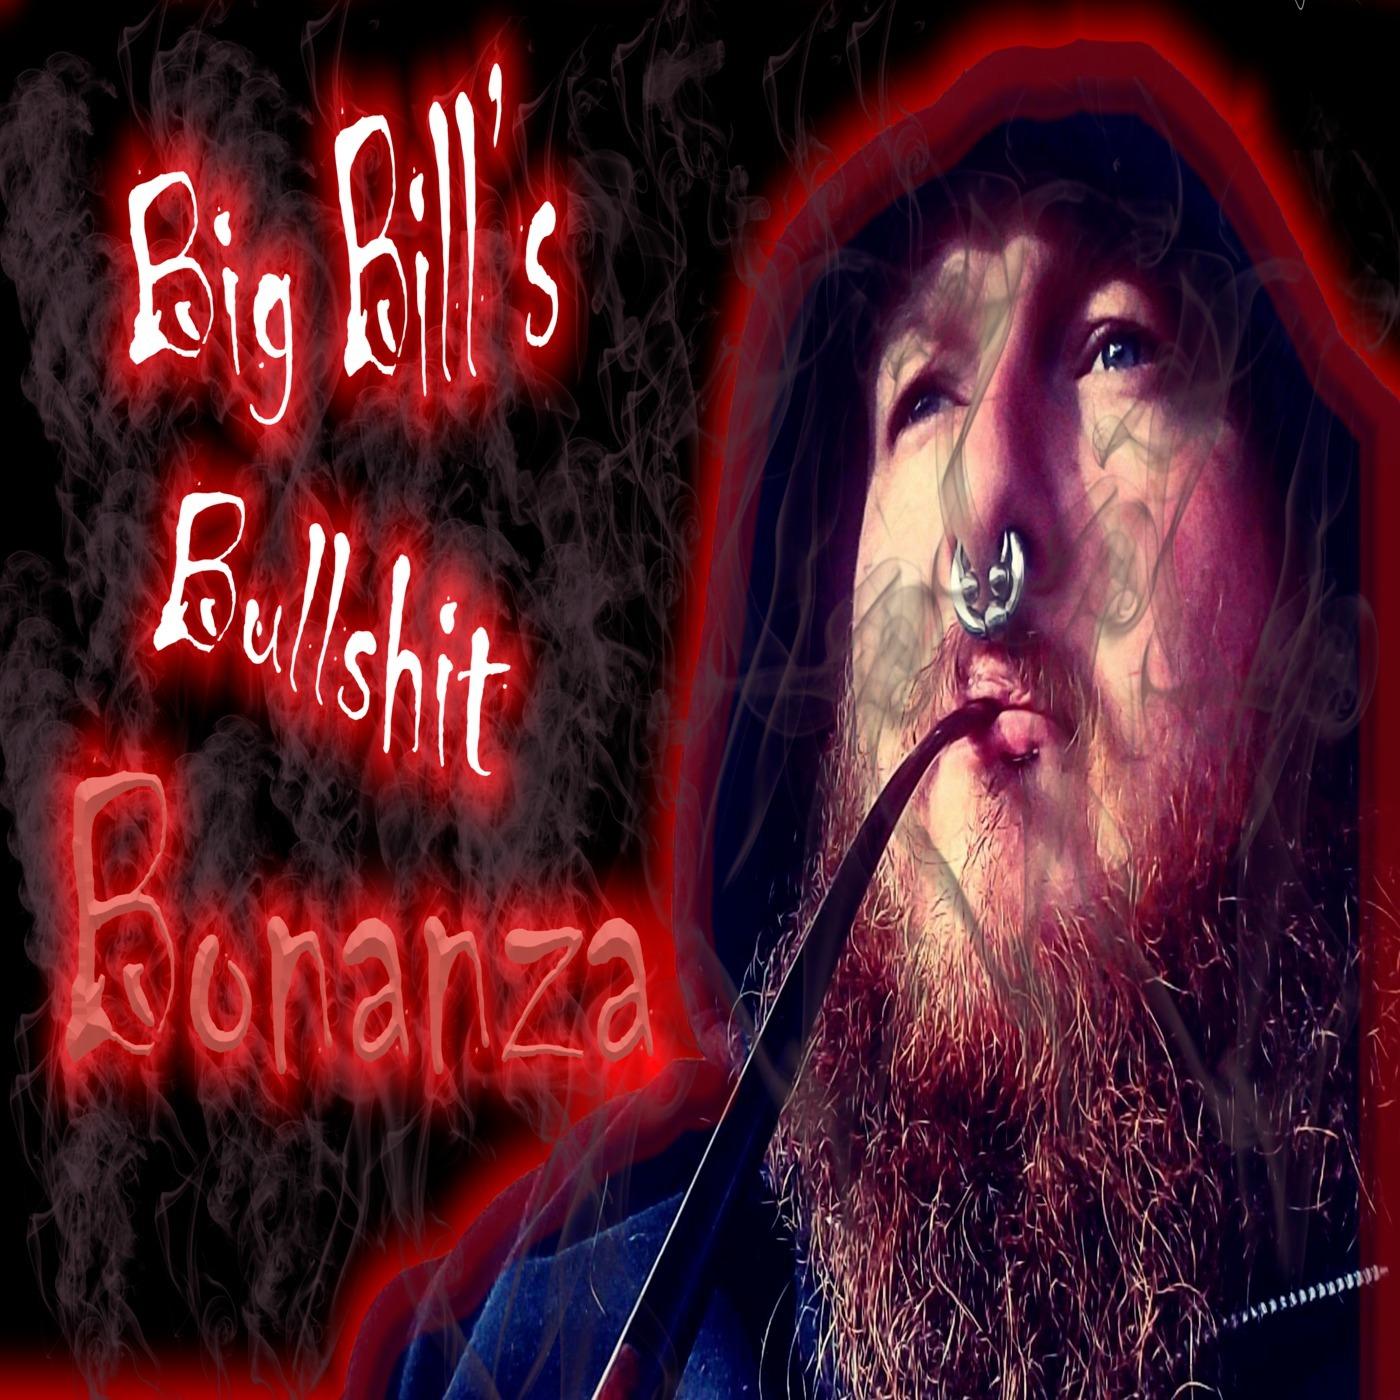 Big Bill's BS Bonanza